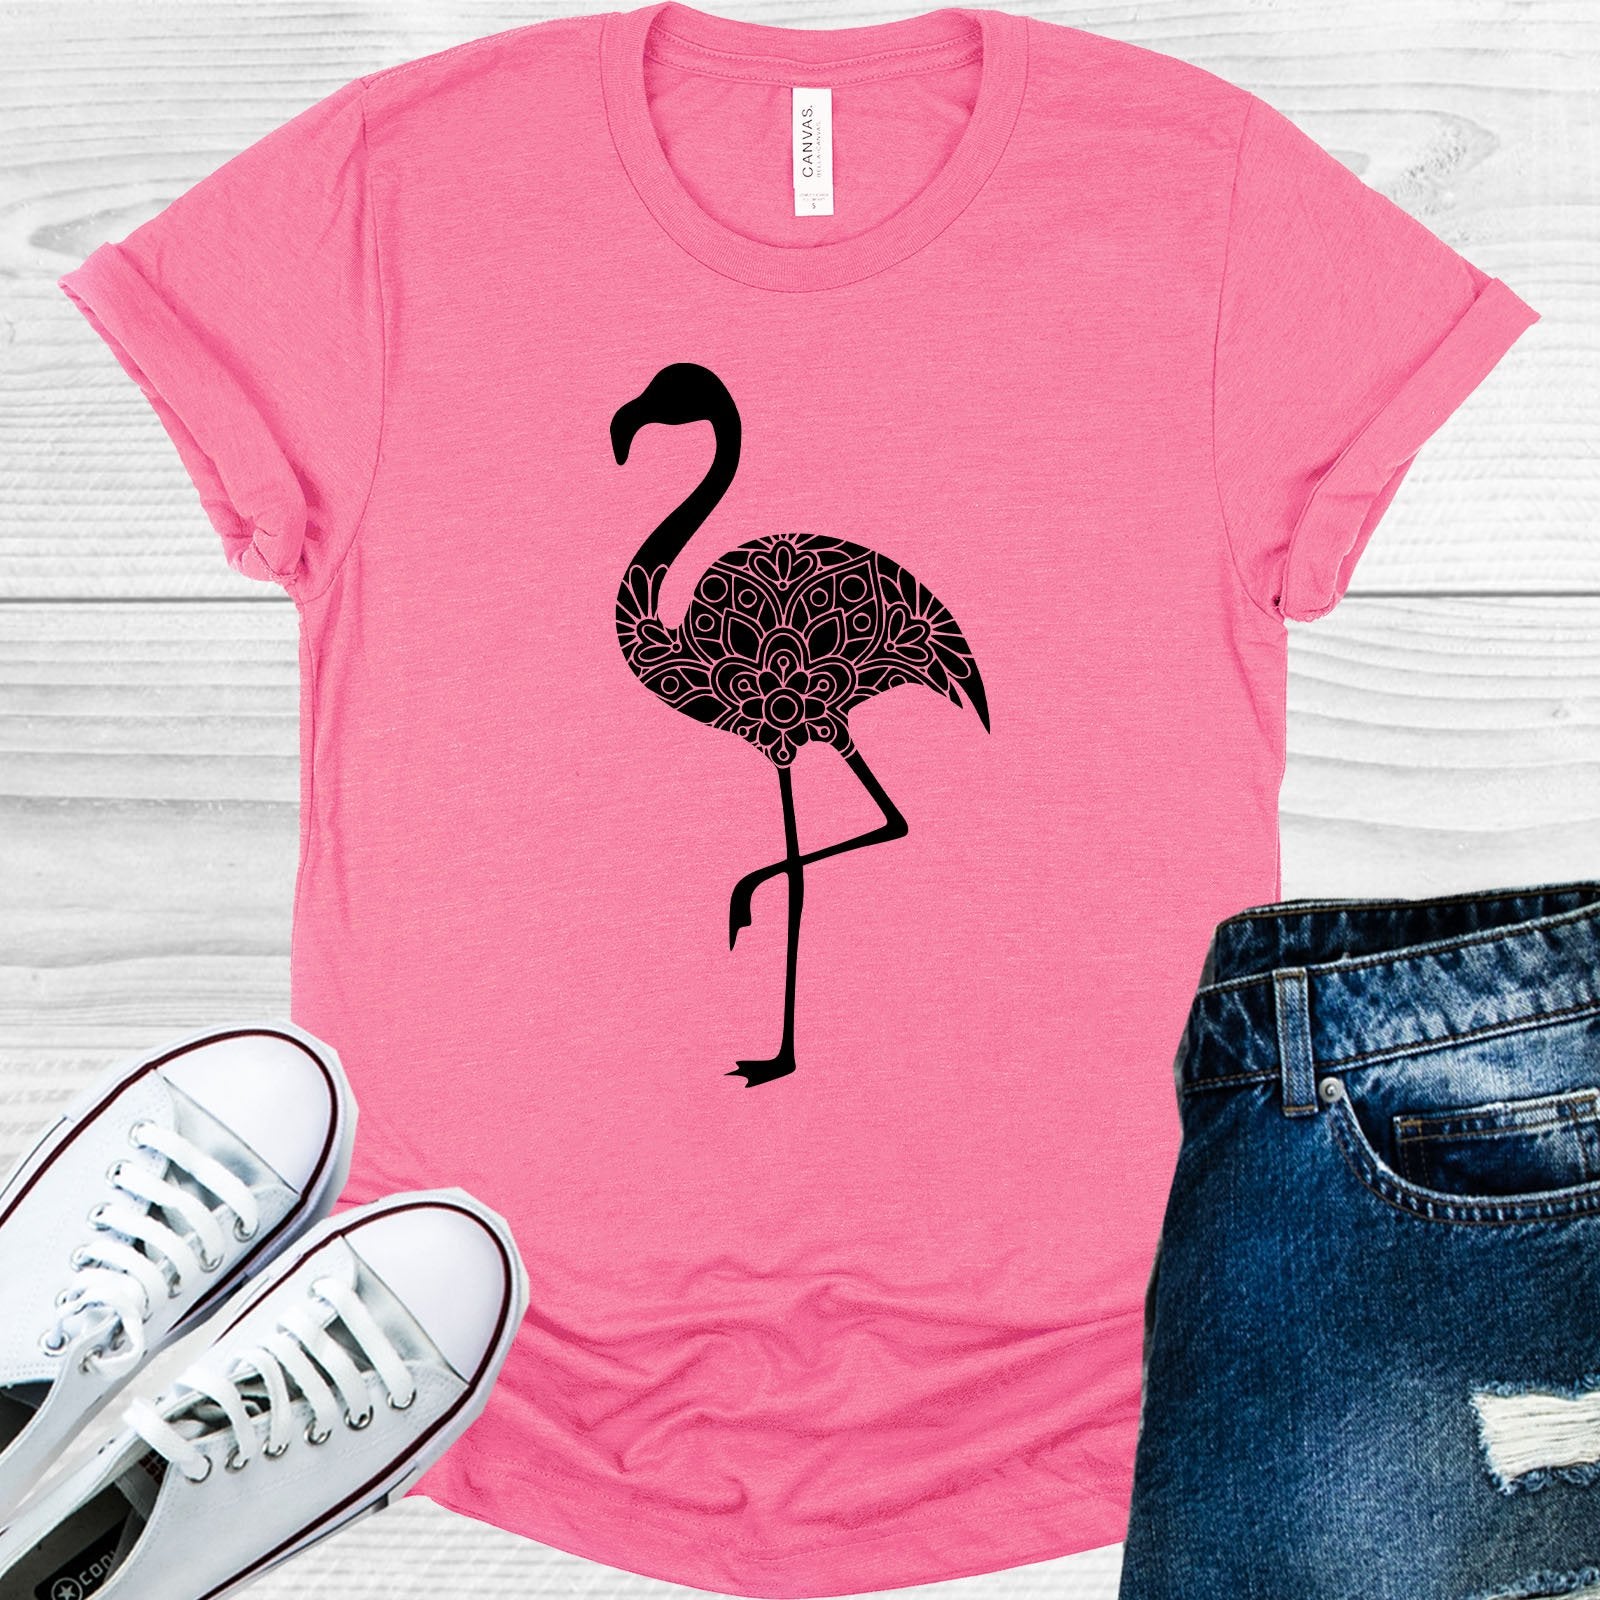 Flamingo Graphic Tee Graphic Tee